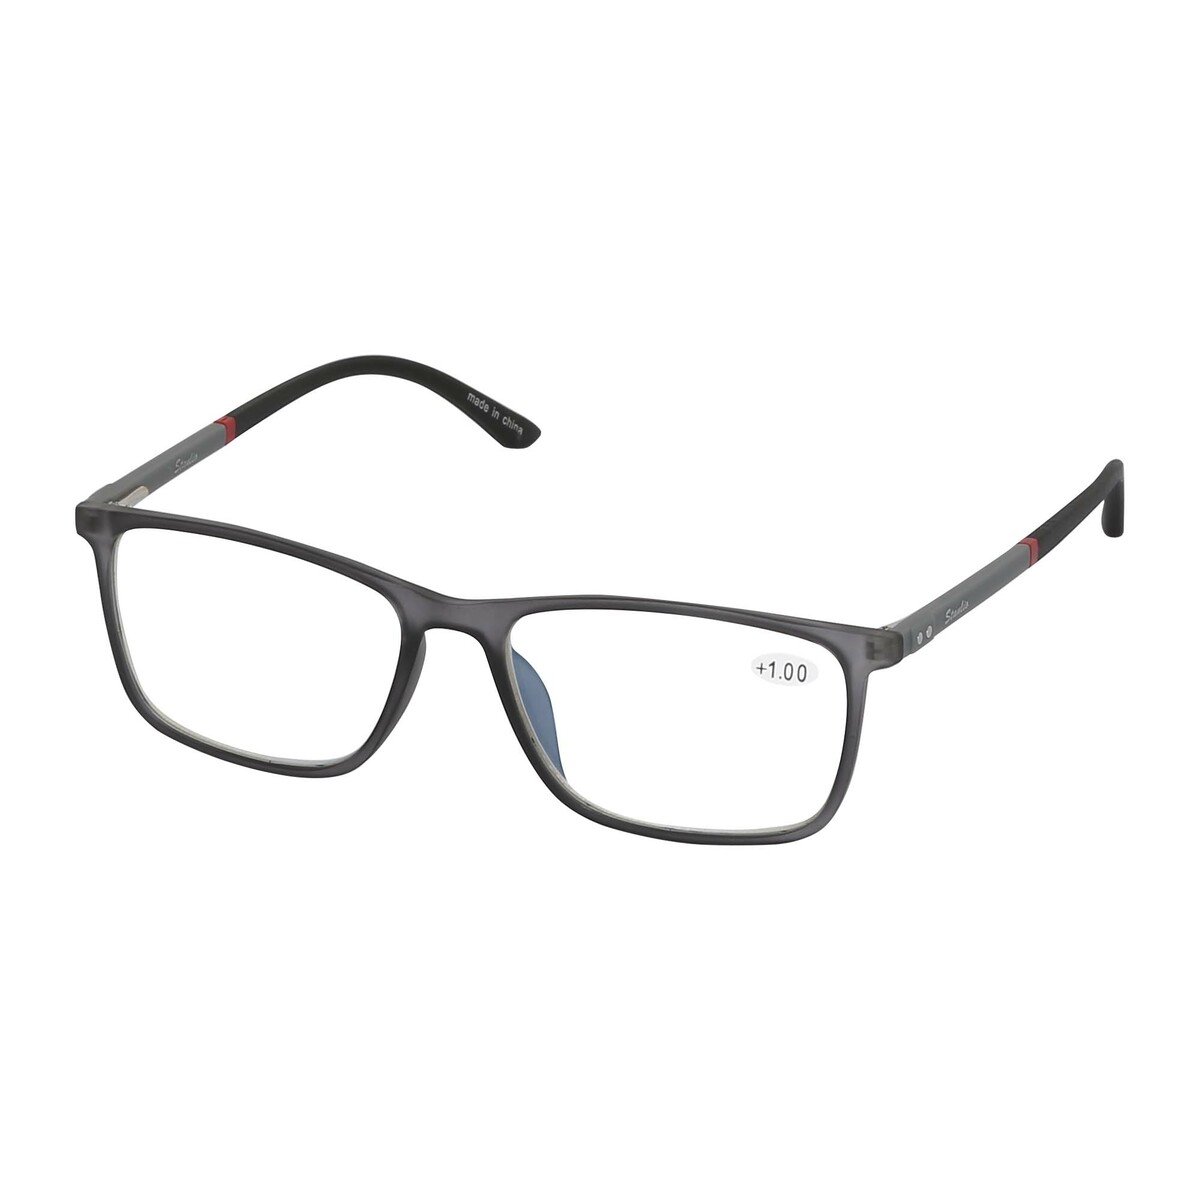 Stanlio Unisex Reading Glasses +1.00